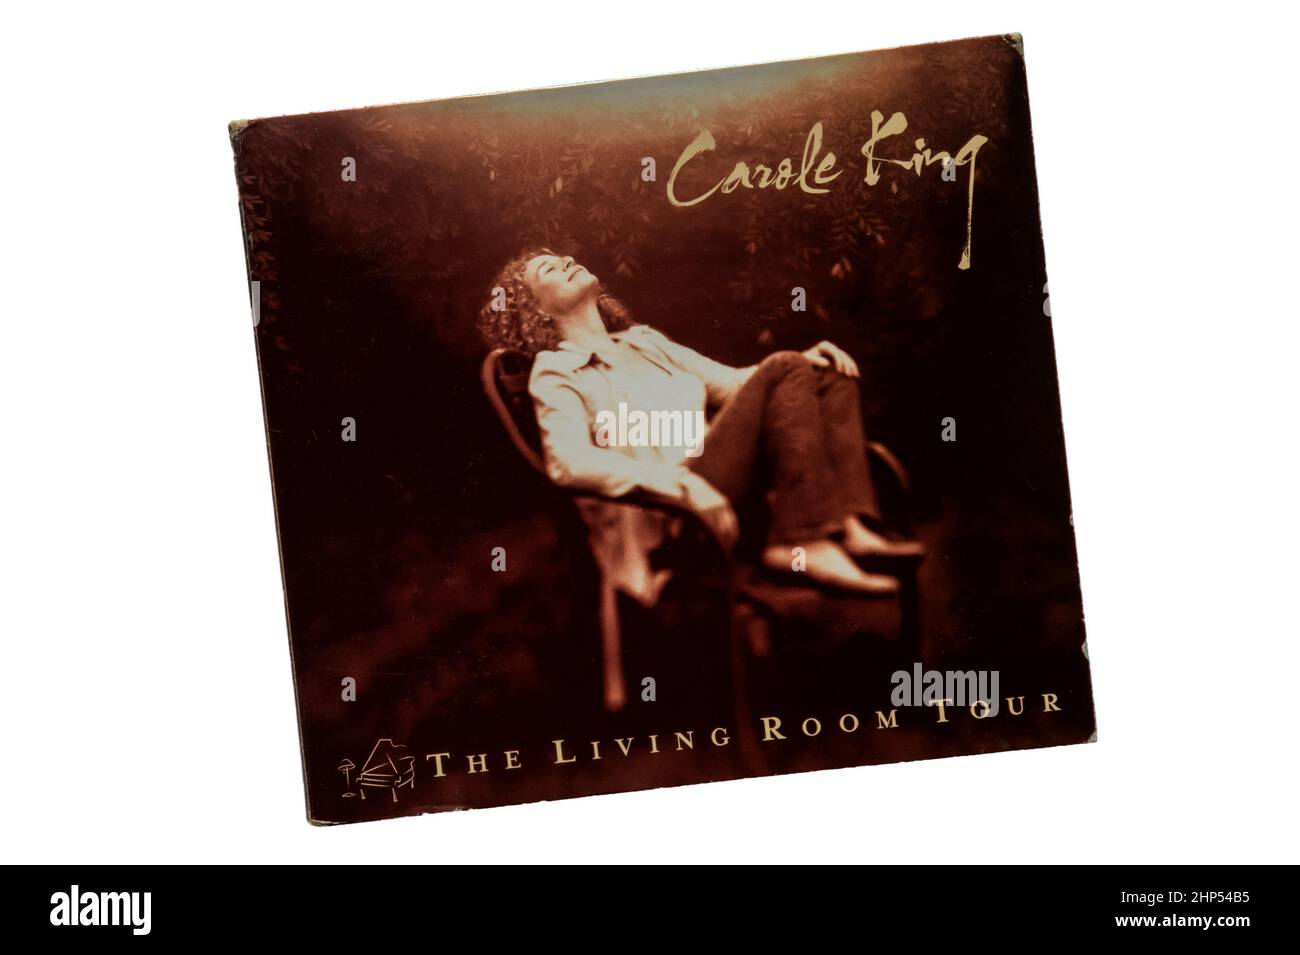 The Living Room Tour est un album en direct de Carole King sorti en 2005. Banque D'Images